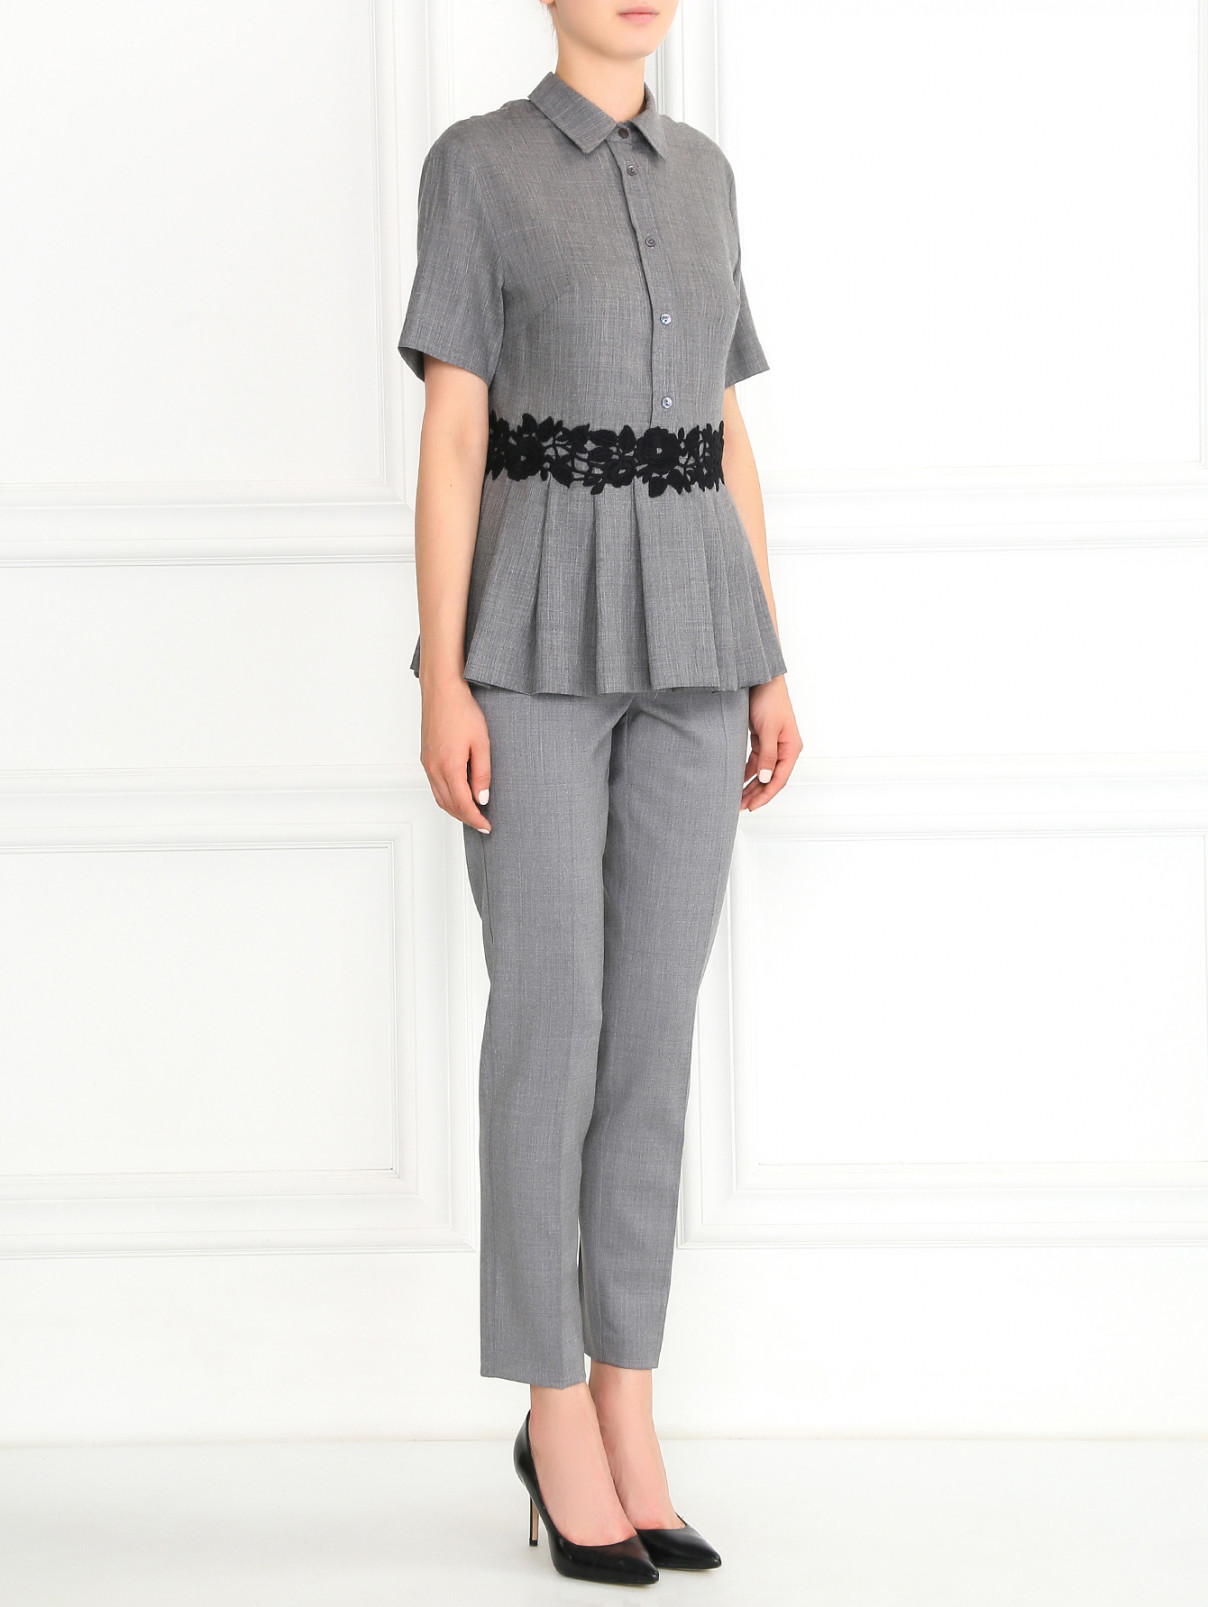 Блуза из шерсти с кружевной отделкой P.A.R.O.S.H.  –  Модель Общий вид  – Цвет:  Серый